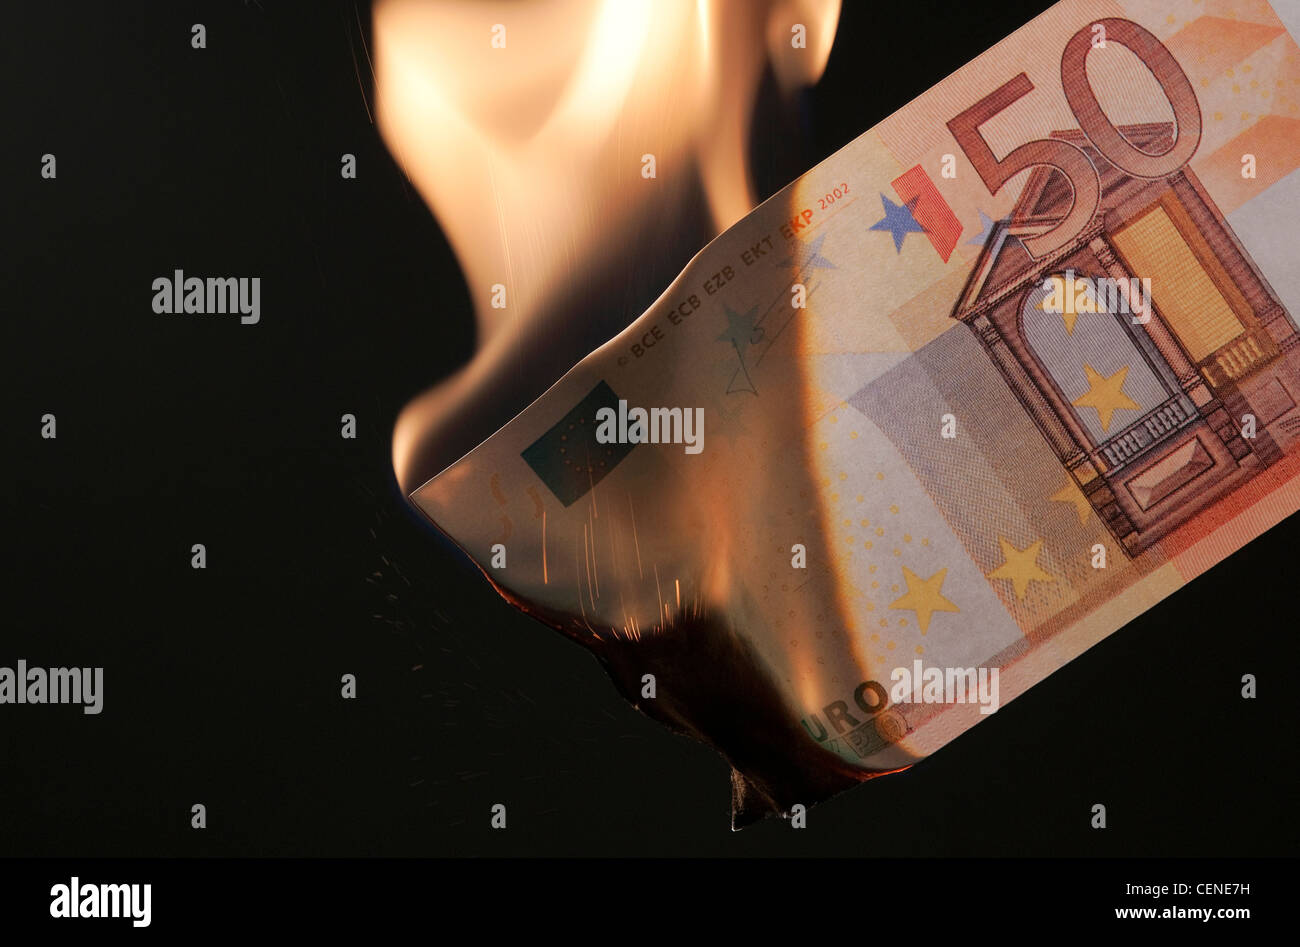 burning money on black background Stock Photo